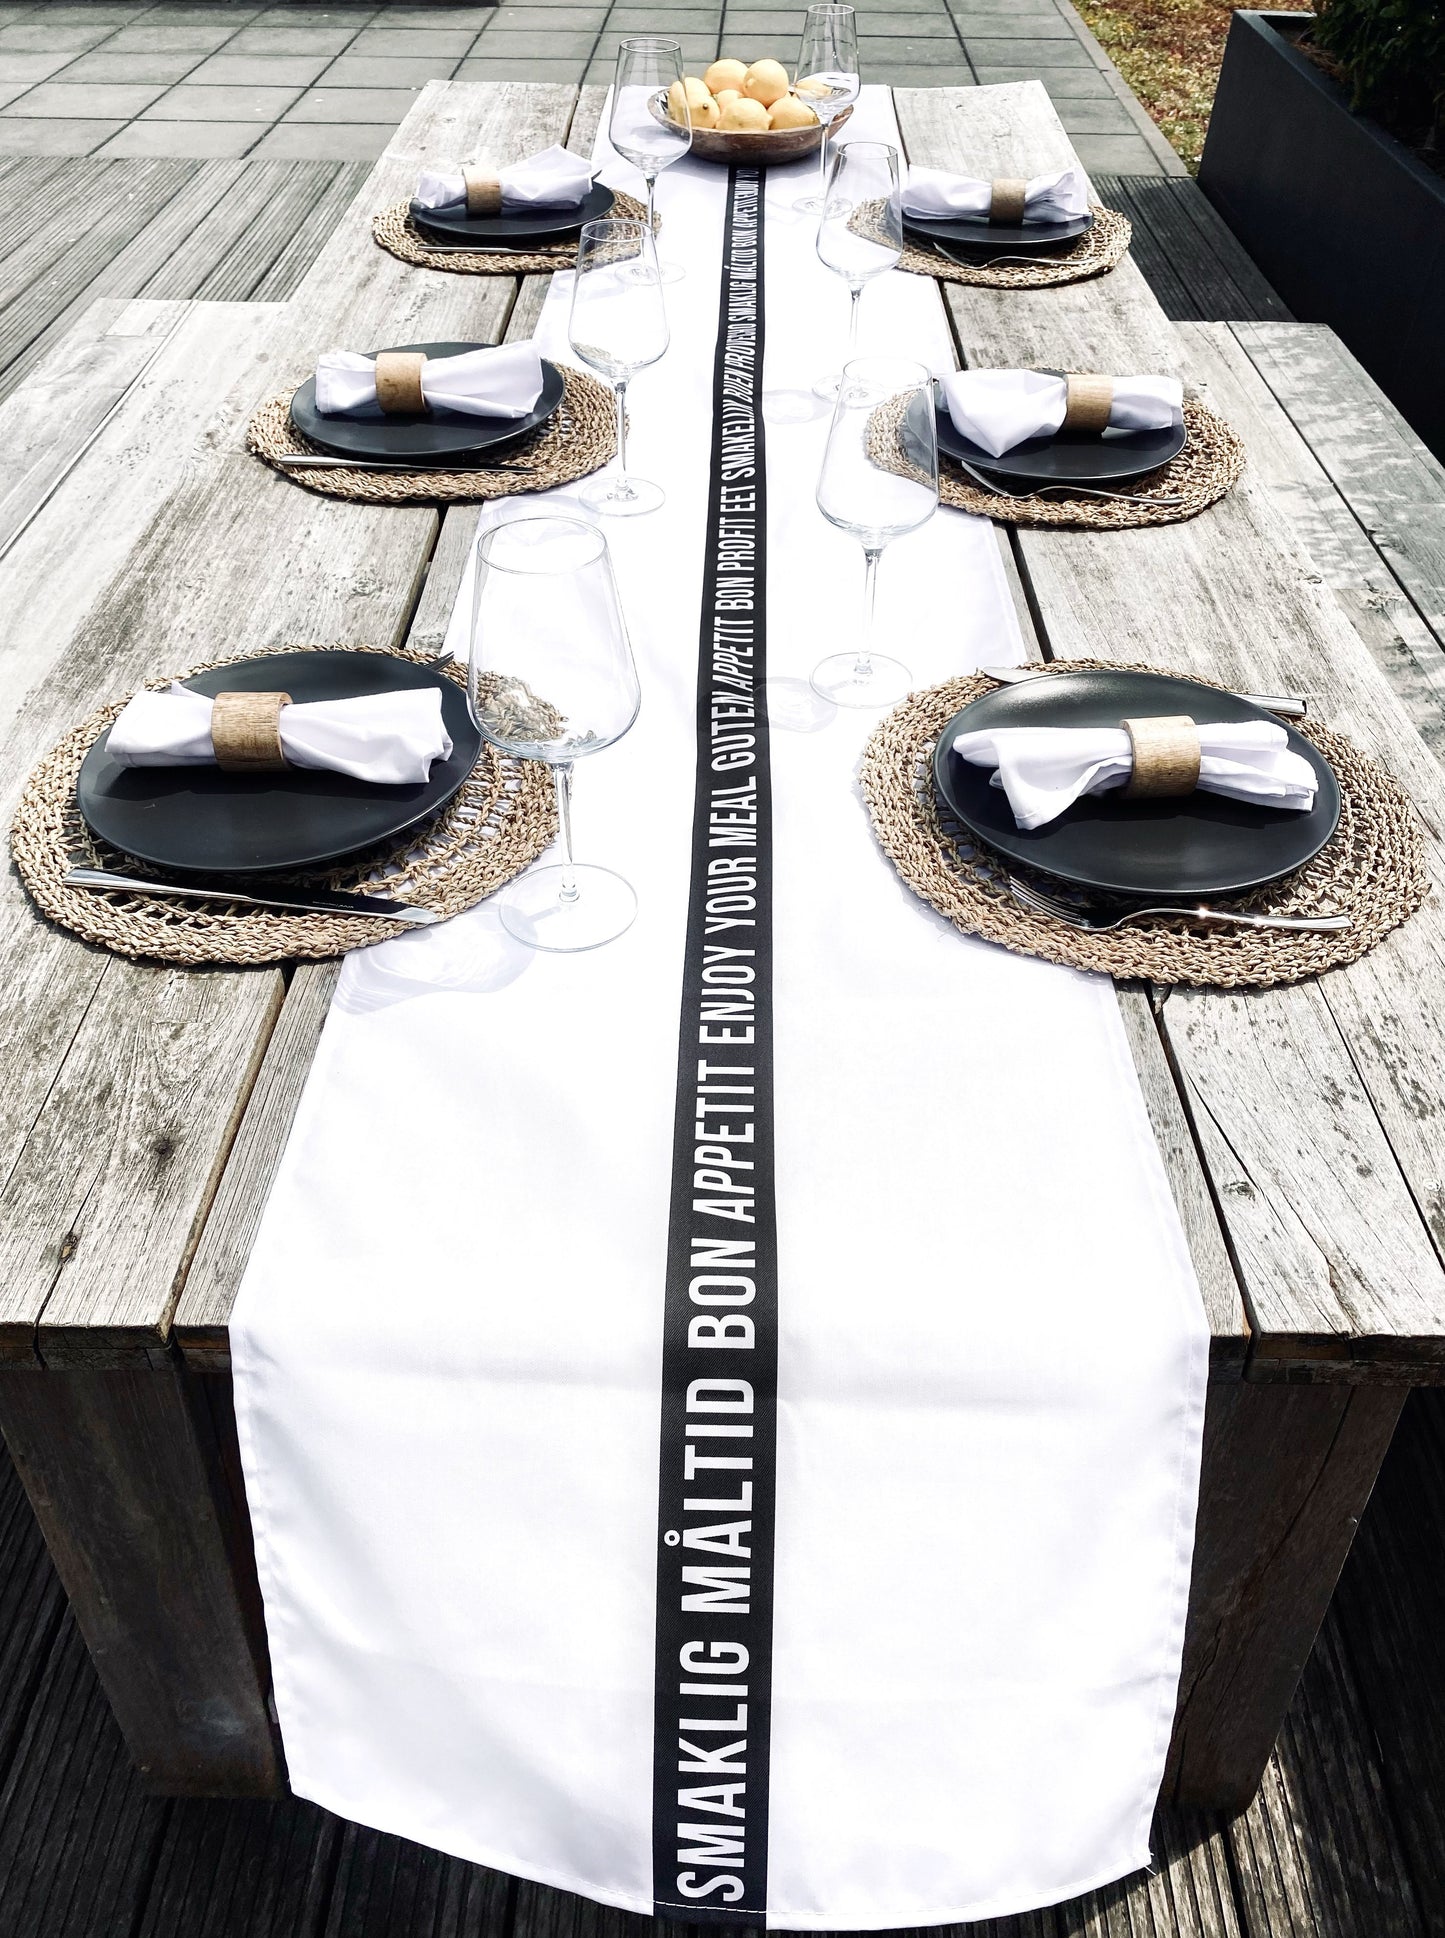 HUISJEVANSANNE witte tafelloper met tekst eet smakelijk in verschillende talen. Zwart witte tafelloper.